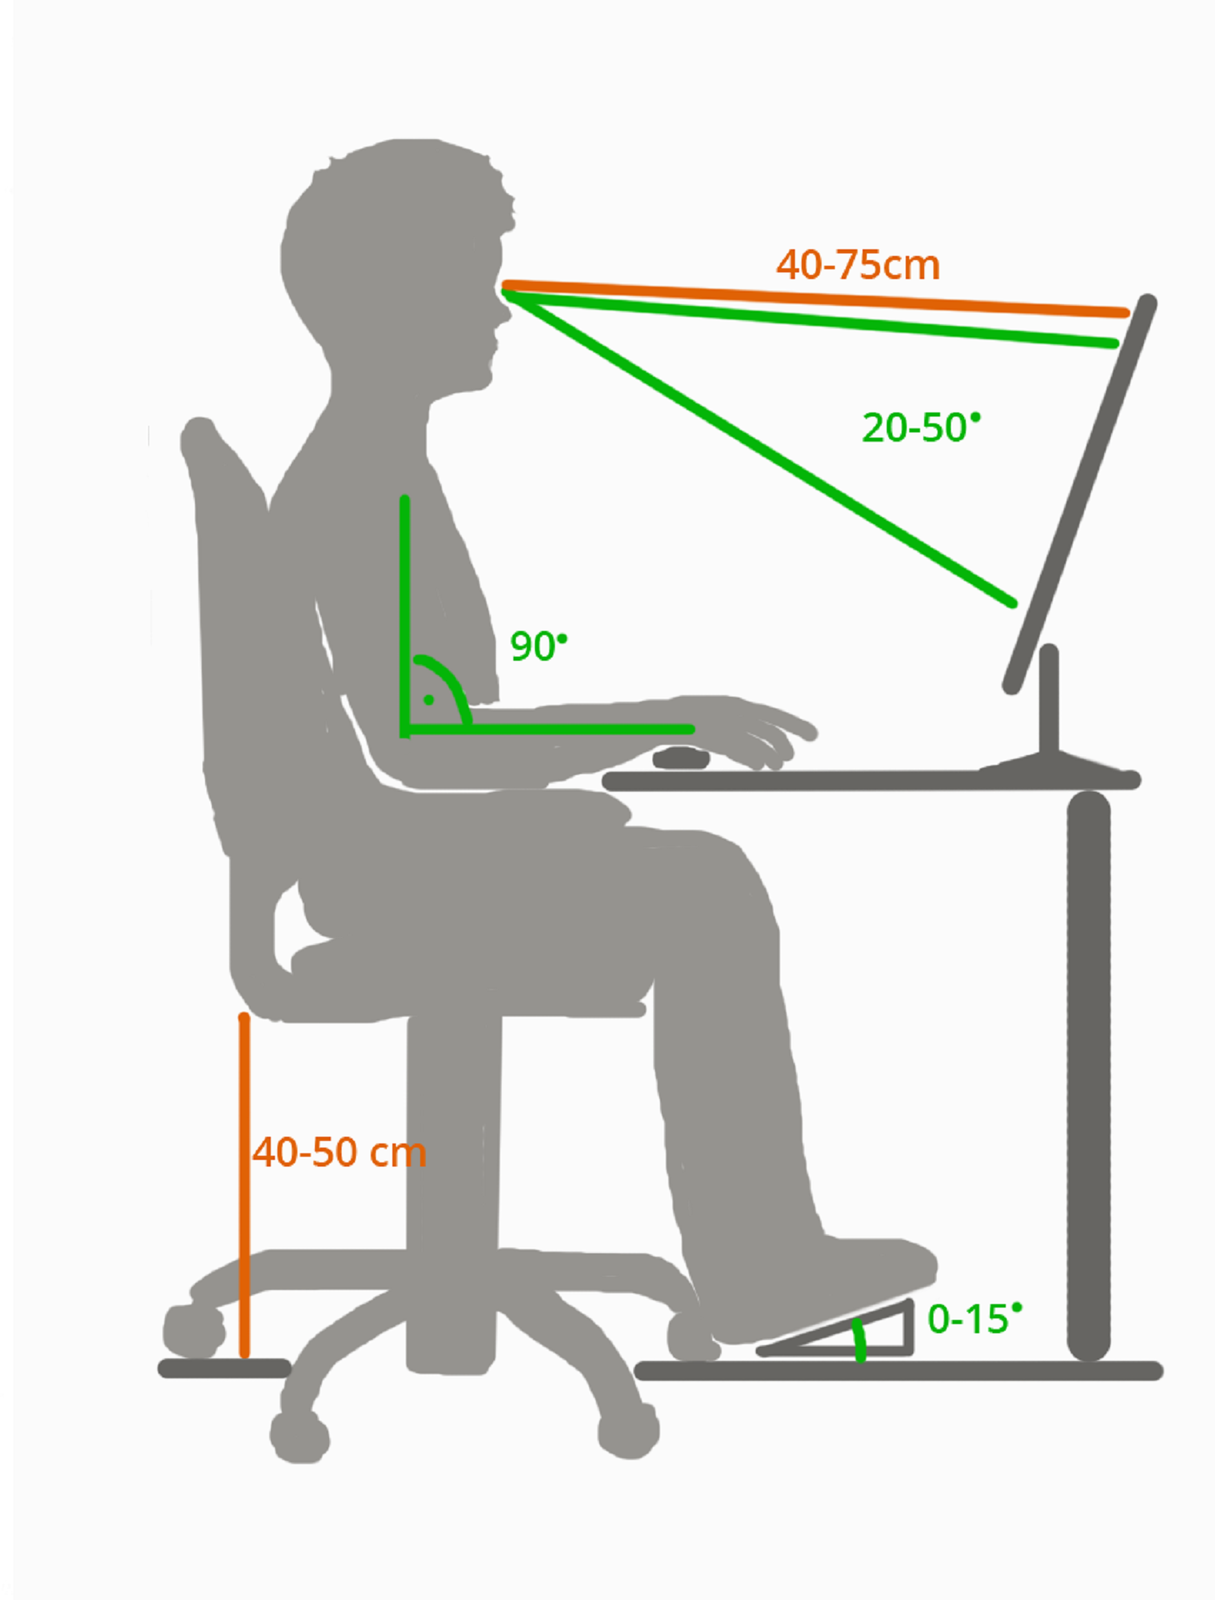 Ilustracja przedstawiająca prawidłowo zorganizowane stanowisko pracy. Osoba siedząca przy komputerze powinna opierać się o krzesło pod kątem 90 stopni. Wysokość od podłogi do siedzenia wynosić powinna od 40 do 50 centymetrów. Odległość oczu od górnej ramki monitora powinna wynosić od 40 do 75 centymetrów, a ekran powinien być pochylony od 20 do 50 stopni do tyłu. Stopy powinny oparte być o powierzchnię maksymalnie pod kątem 15 stopni 